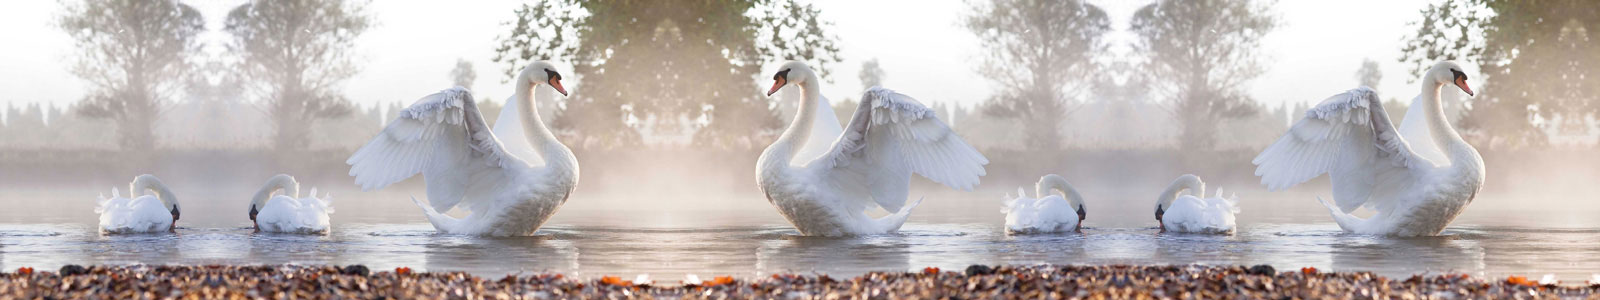 №4469 - Прекрасные лебеди на озере